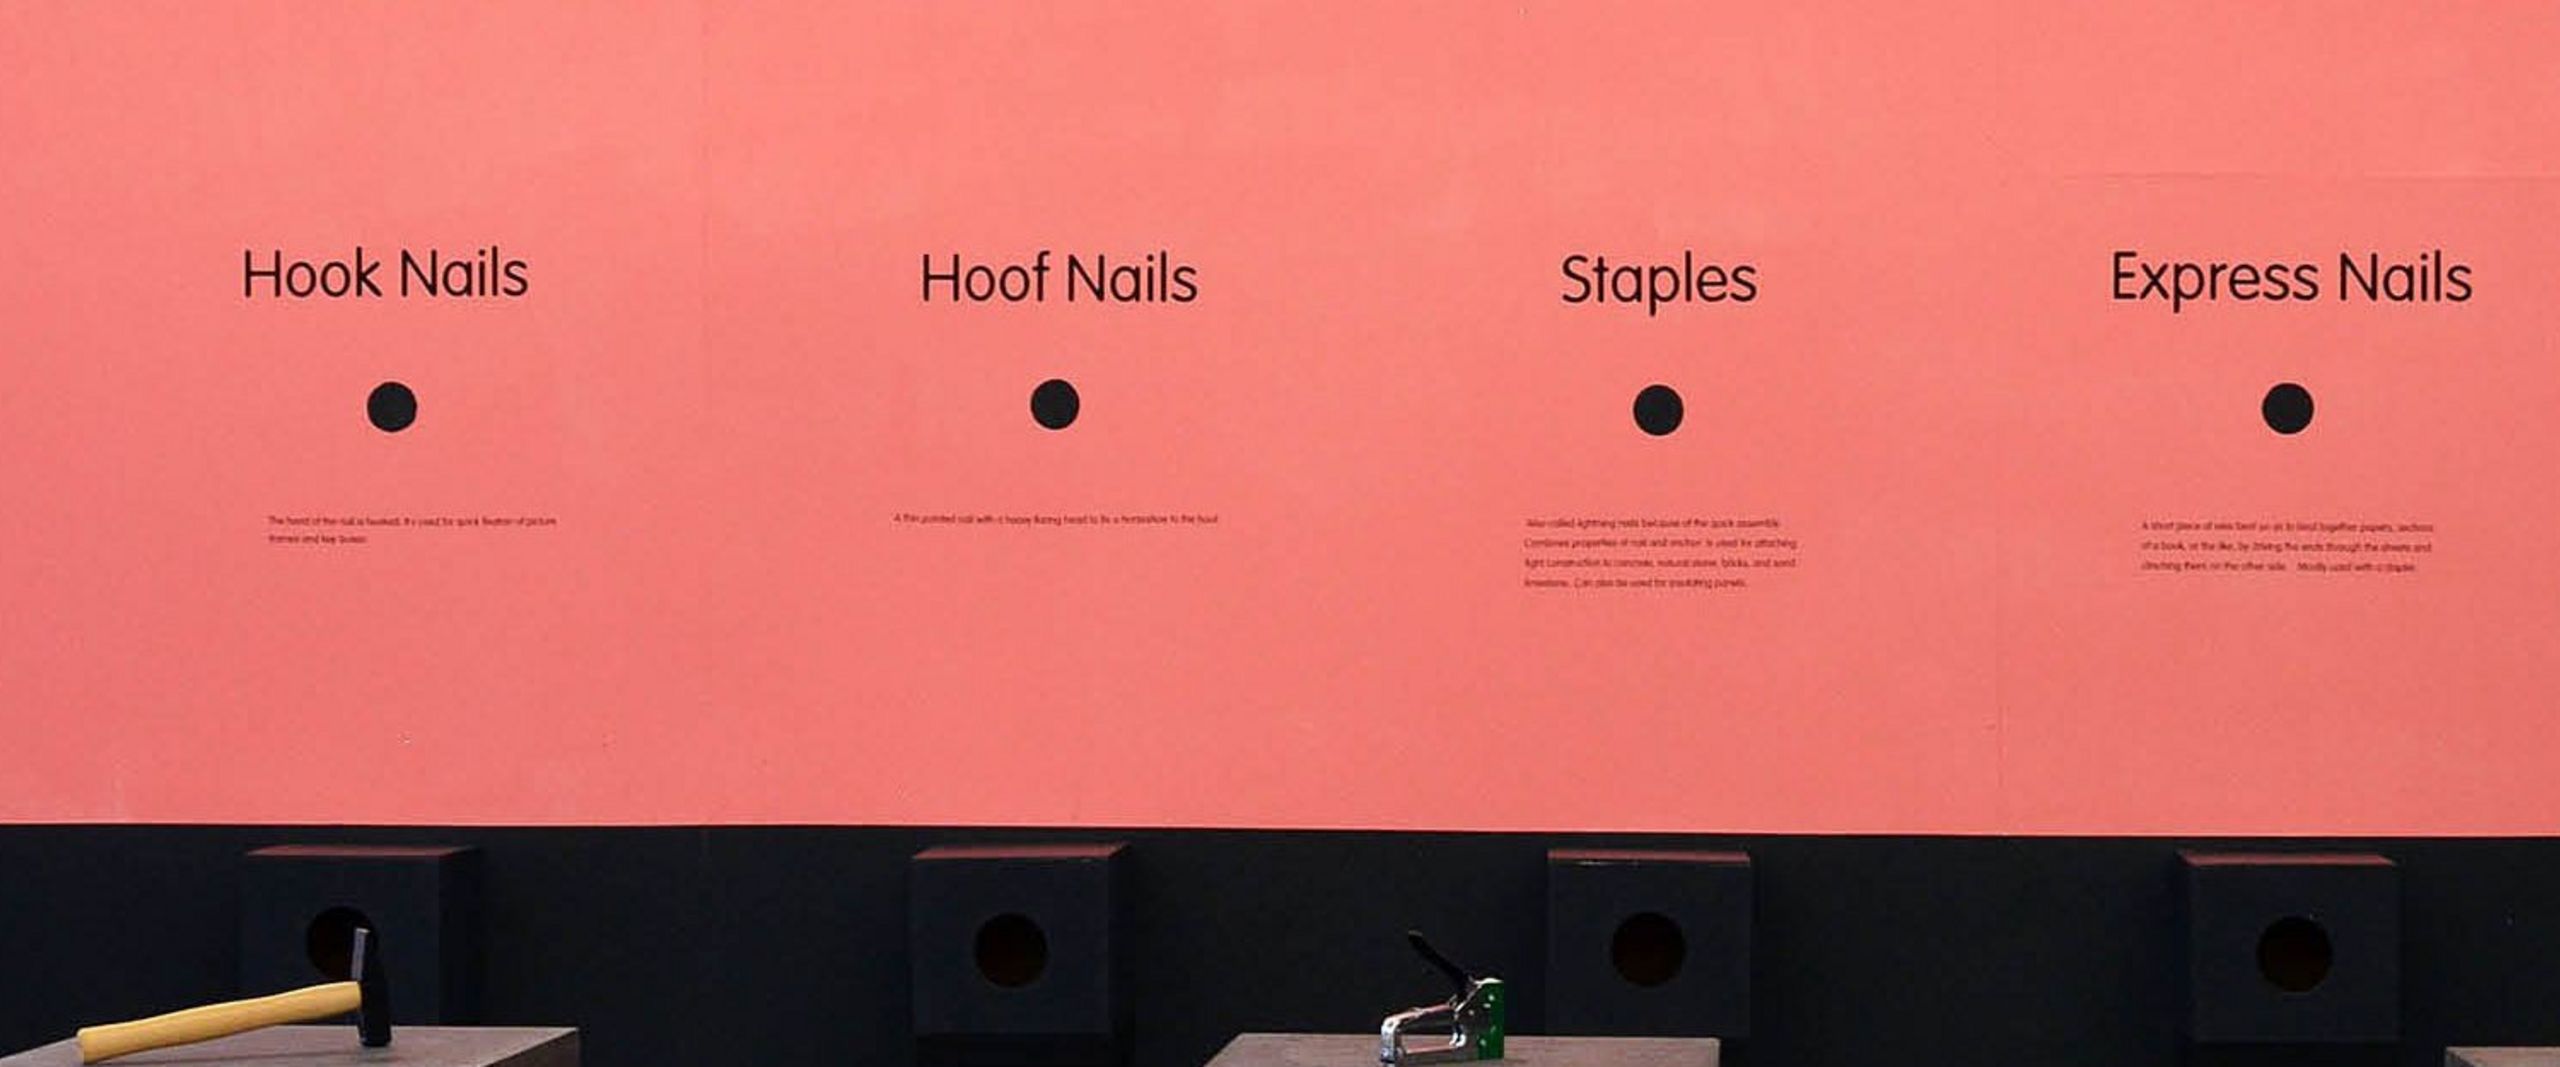 Präsentationsaufbau für verschiedene Arten von Nails.